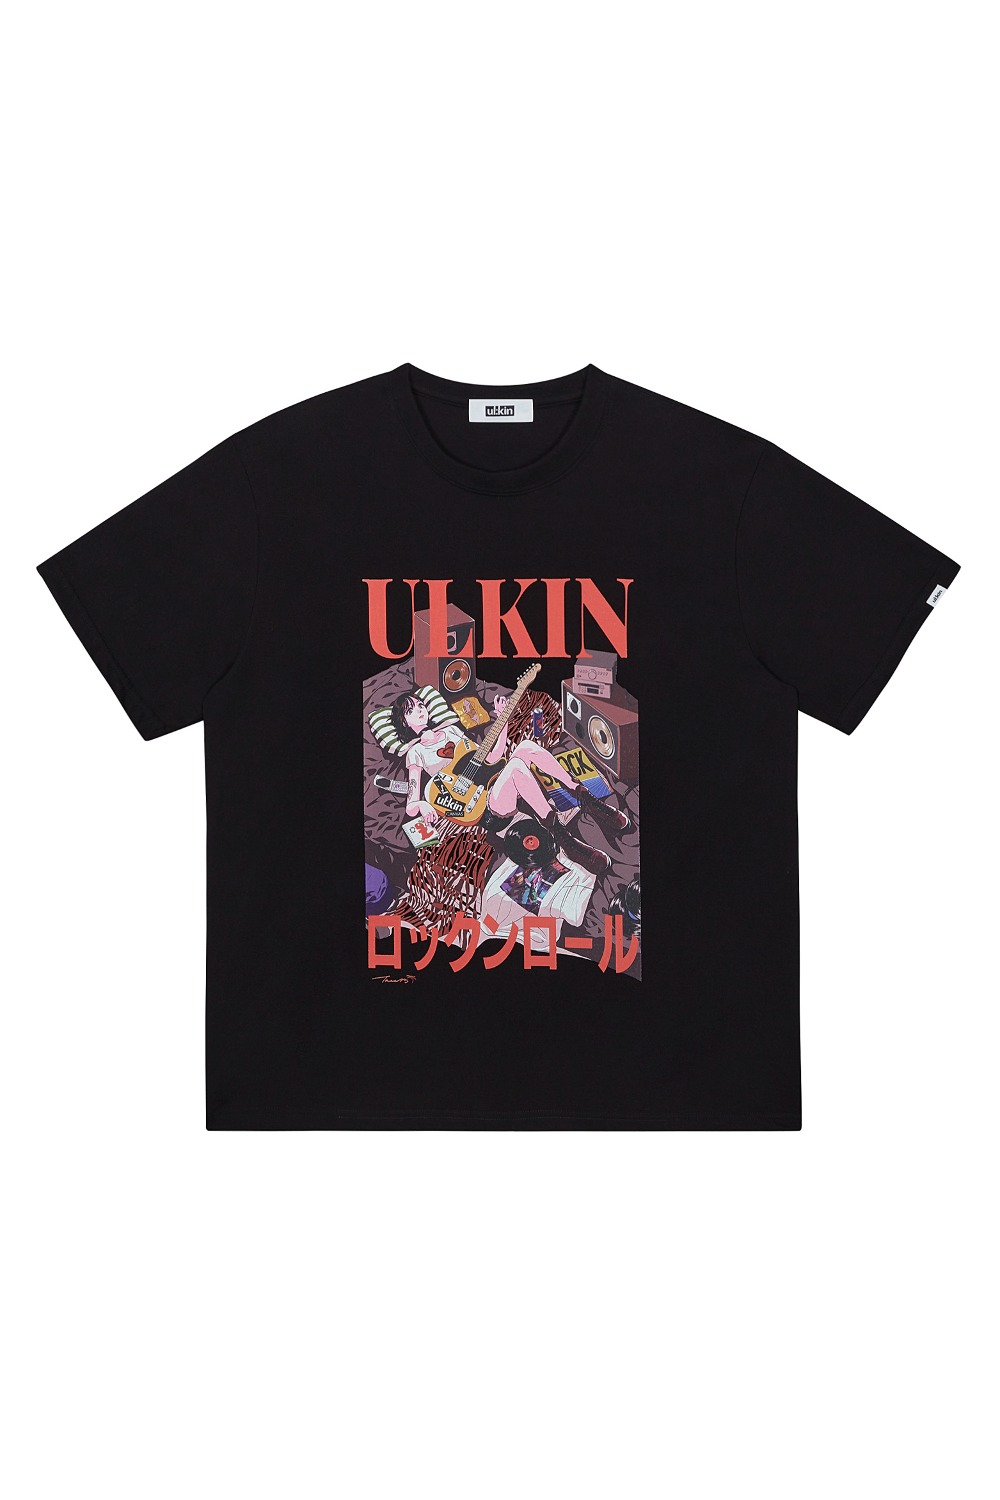 ULKIN X TREE 13 Artist T-shirt_Rock N Roll_Black